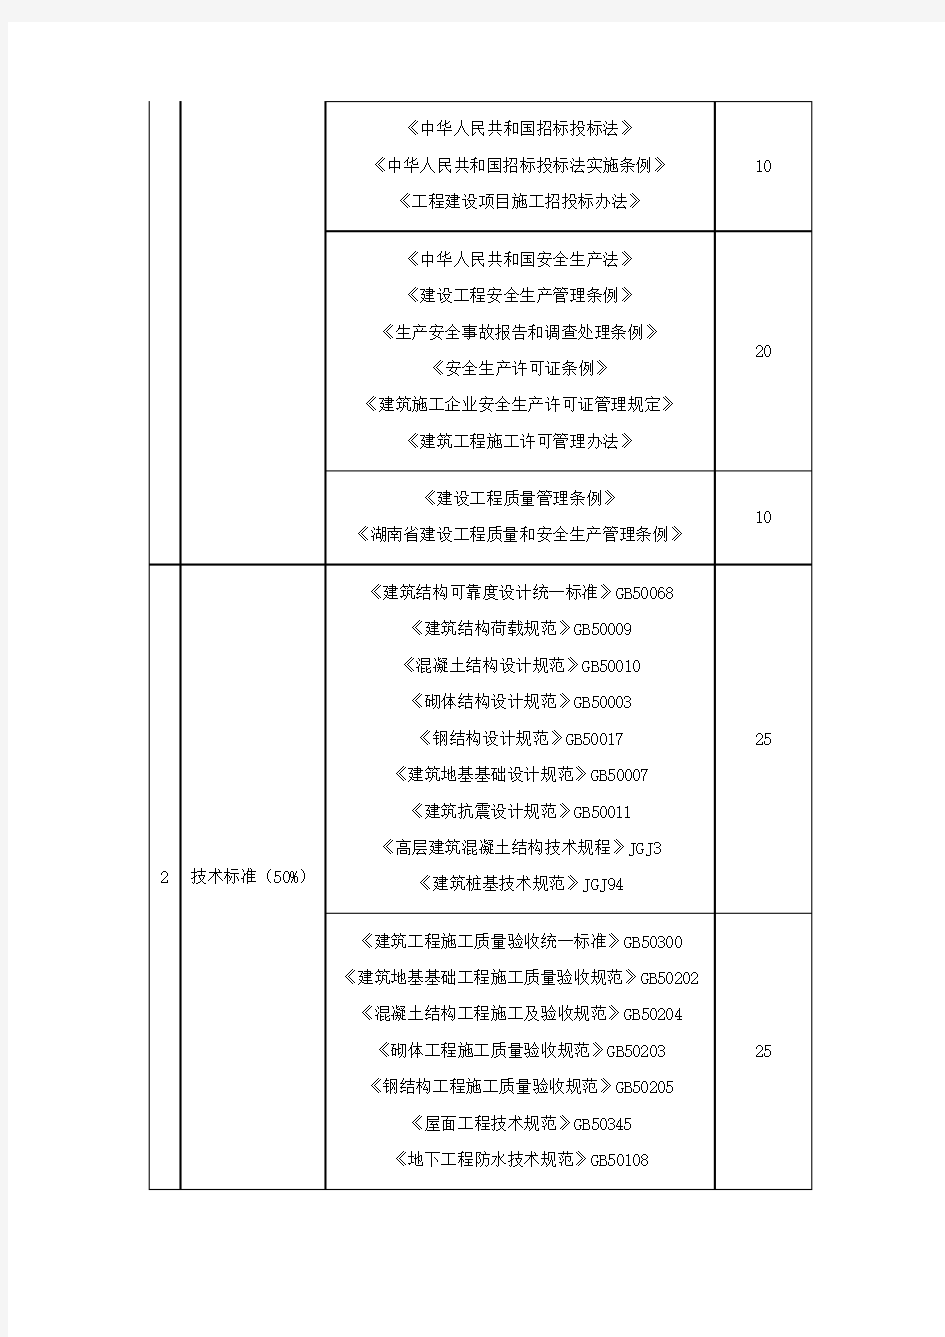 2019年湖南土建职称考试《建筑工程》考试内容